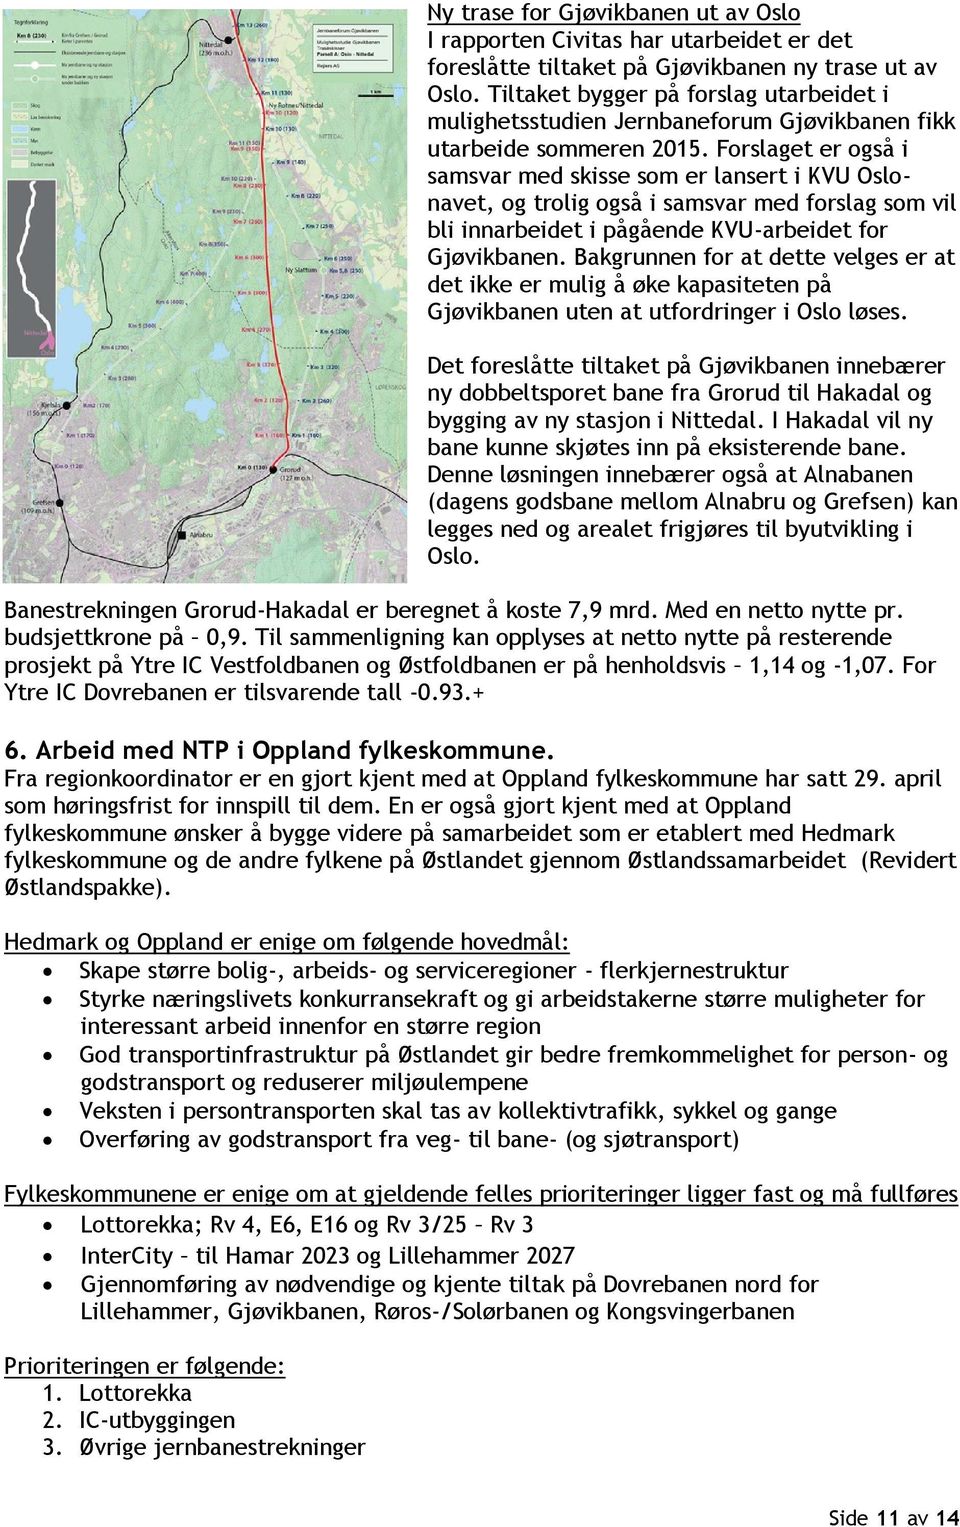 Forslaget er også i samsvar med skisse som er lansert i KVU Oslonavet, og trolig også i samsvar med forslag som vil bli innarbeidet i pågående KVU-arbeidet for Gjøvikbanen.